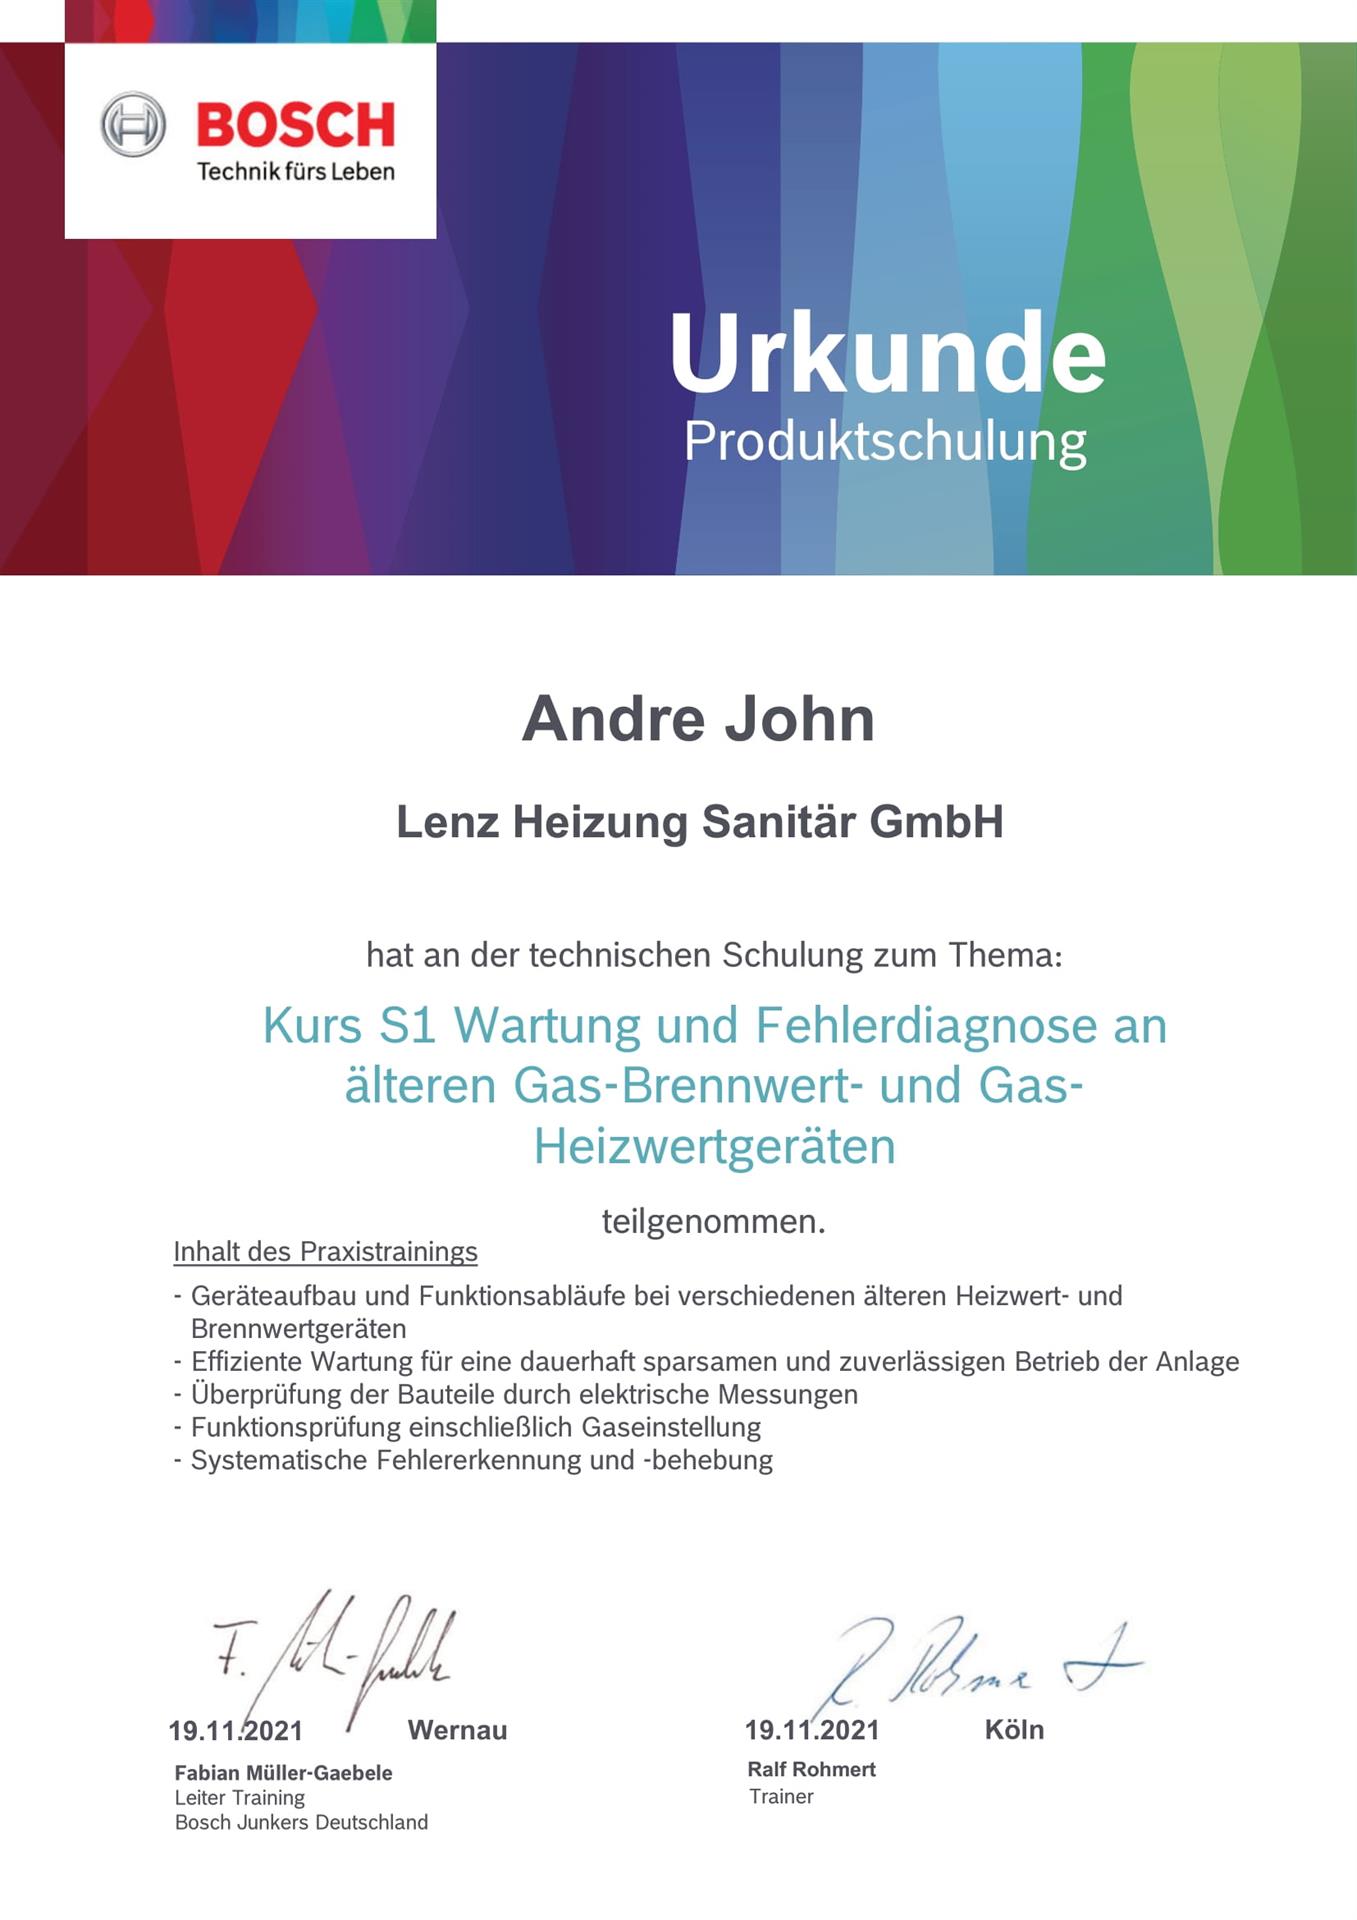 Zertifikat Bosch für Andre John